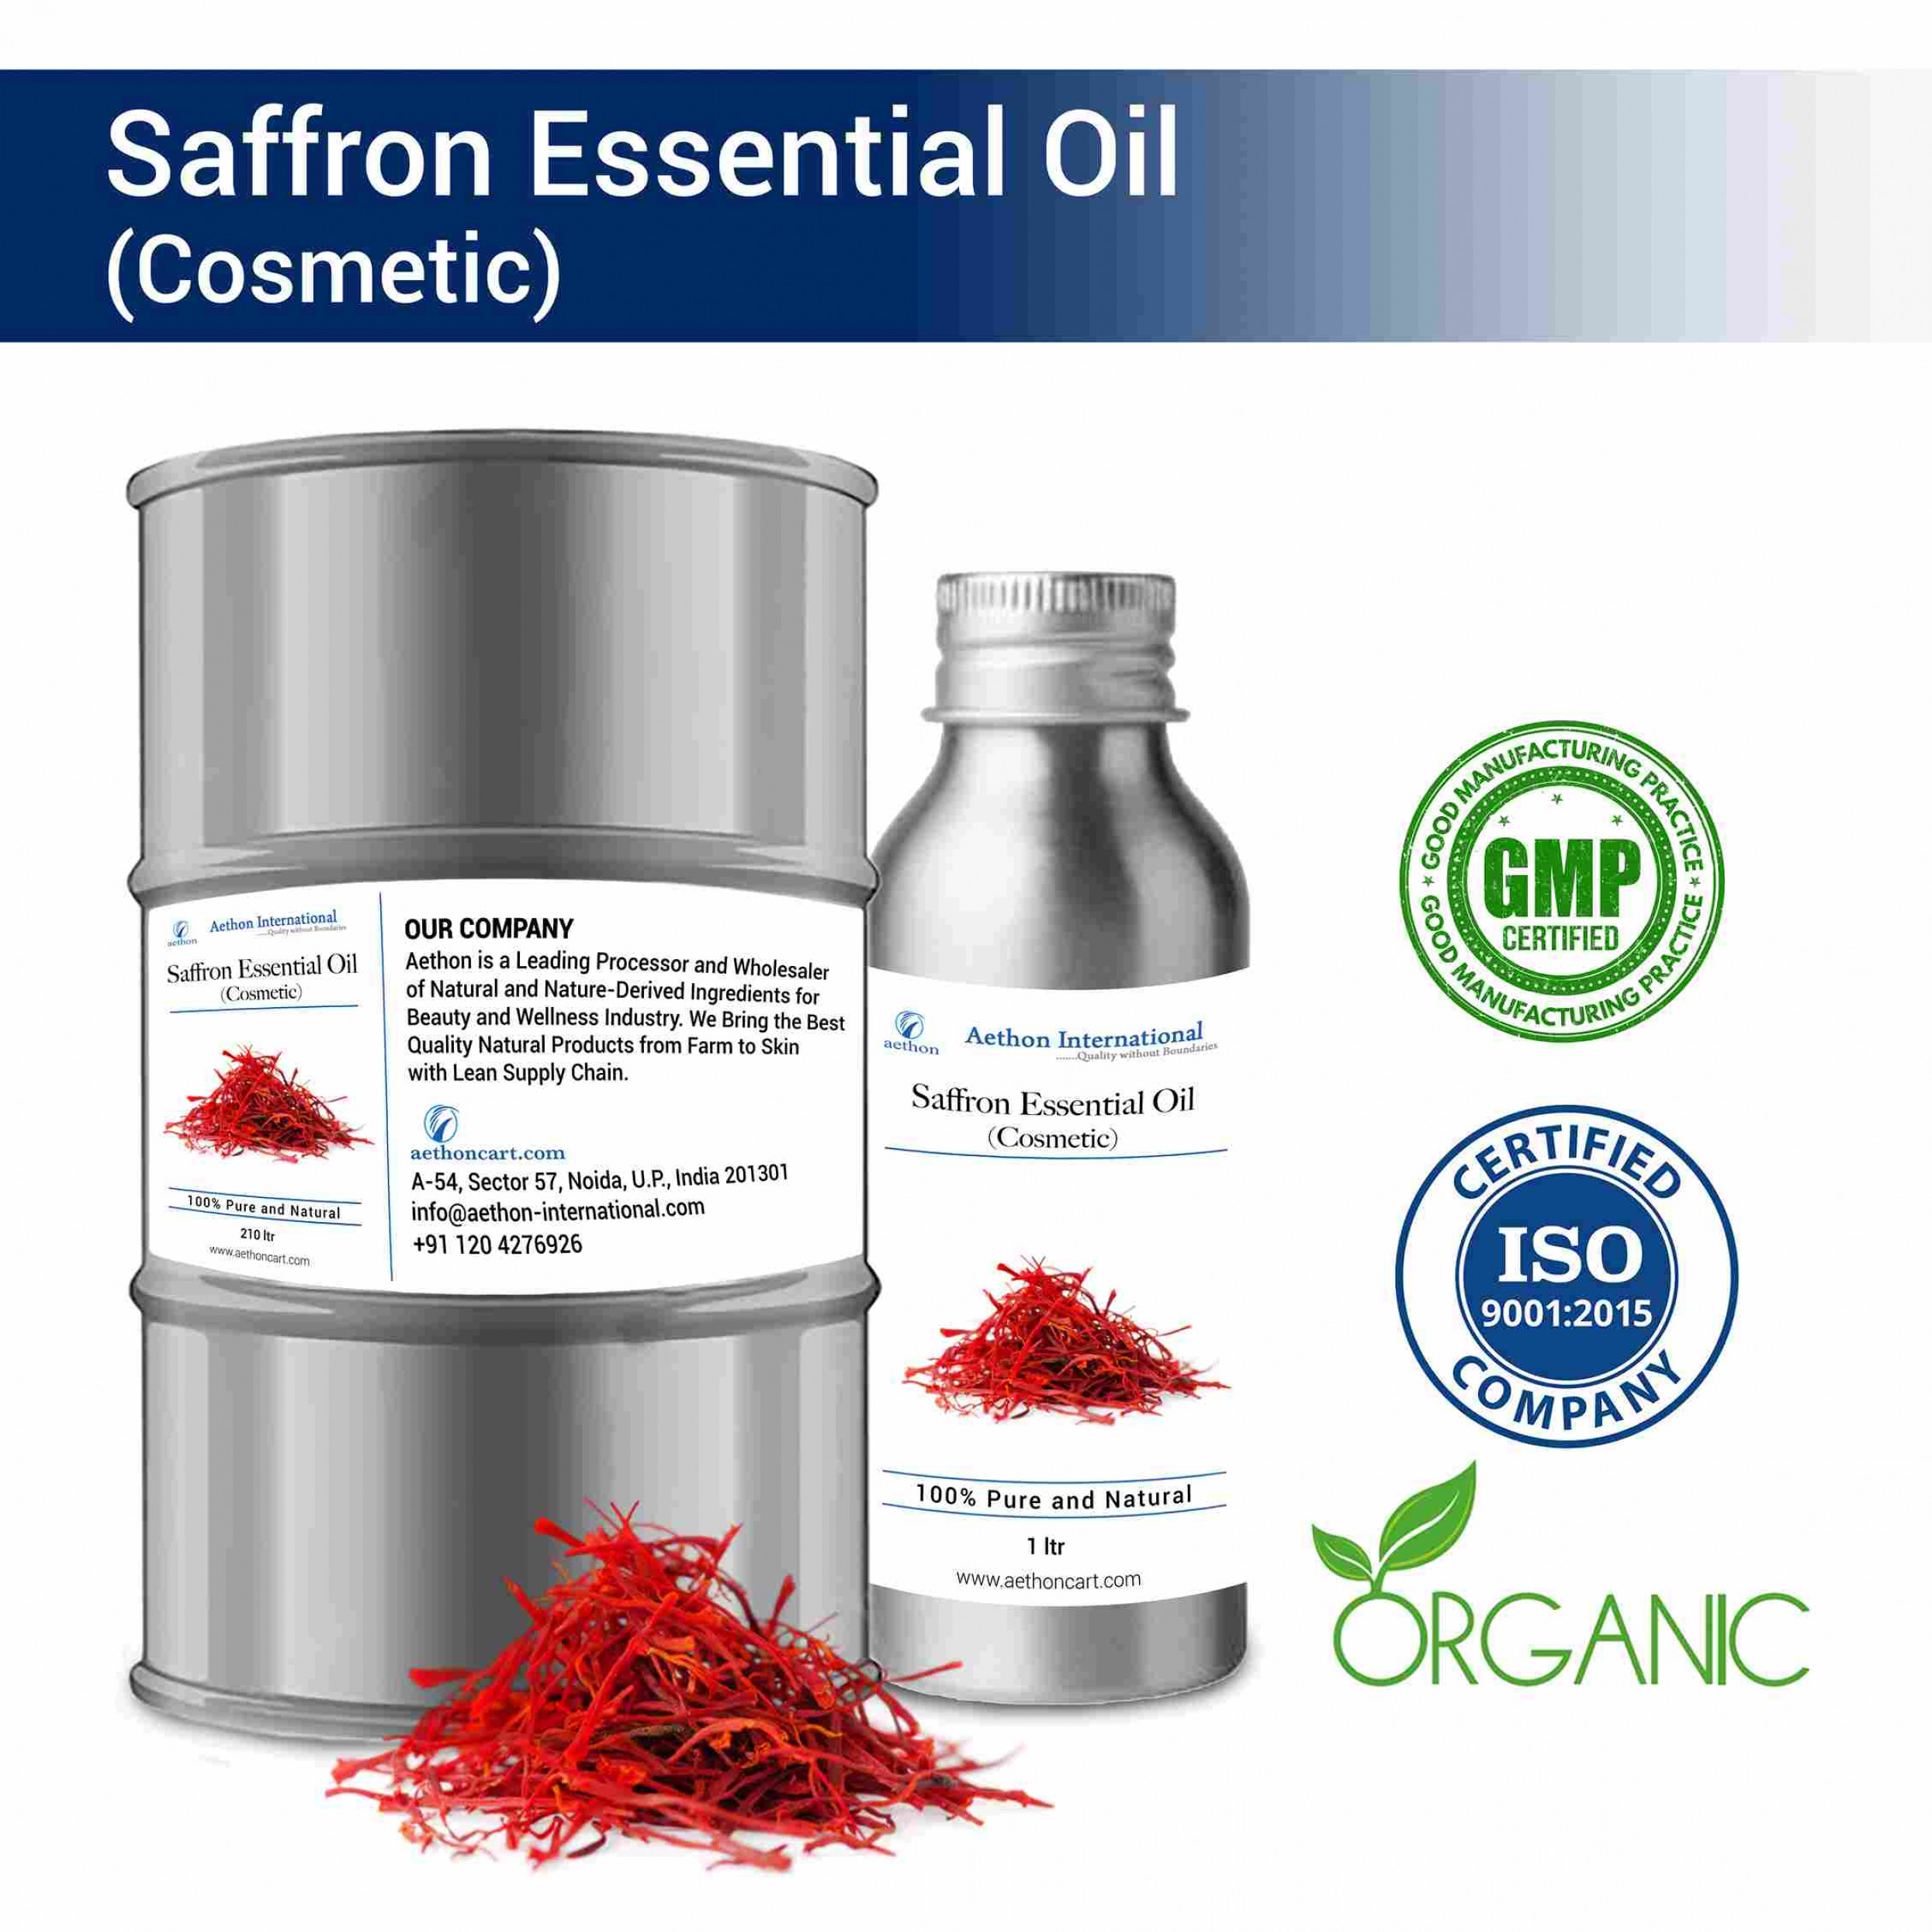 Saffron Essential Oil (Cosmetic)